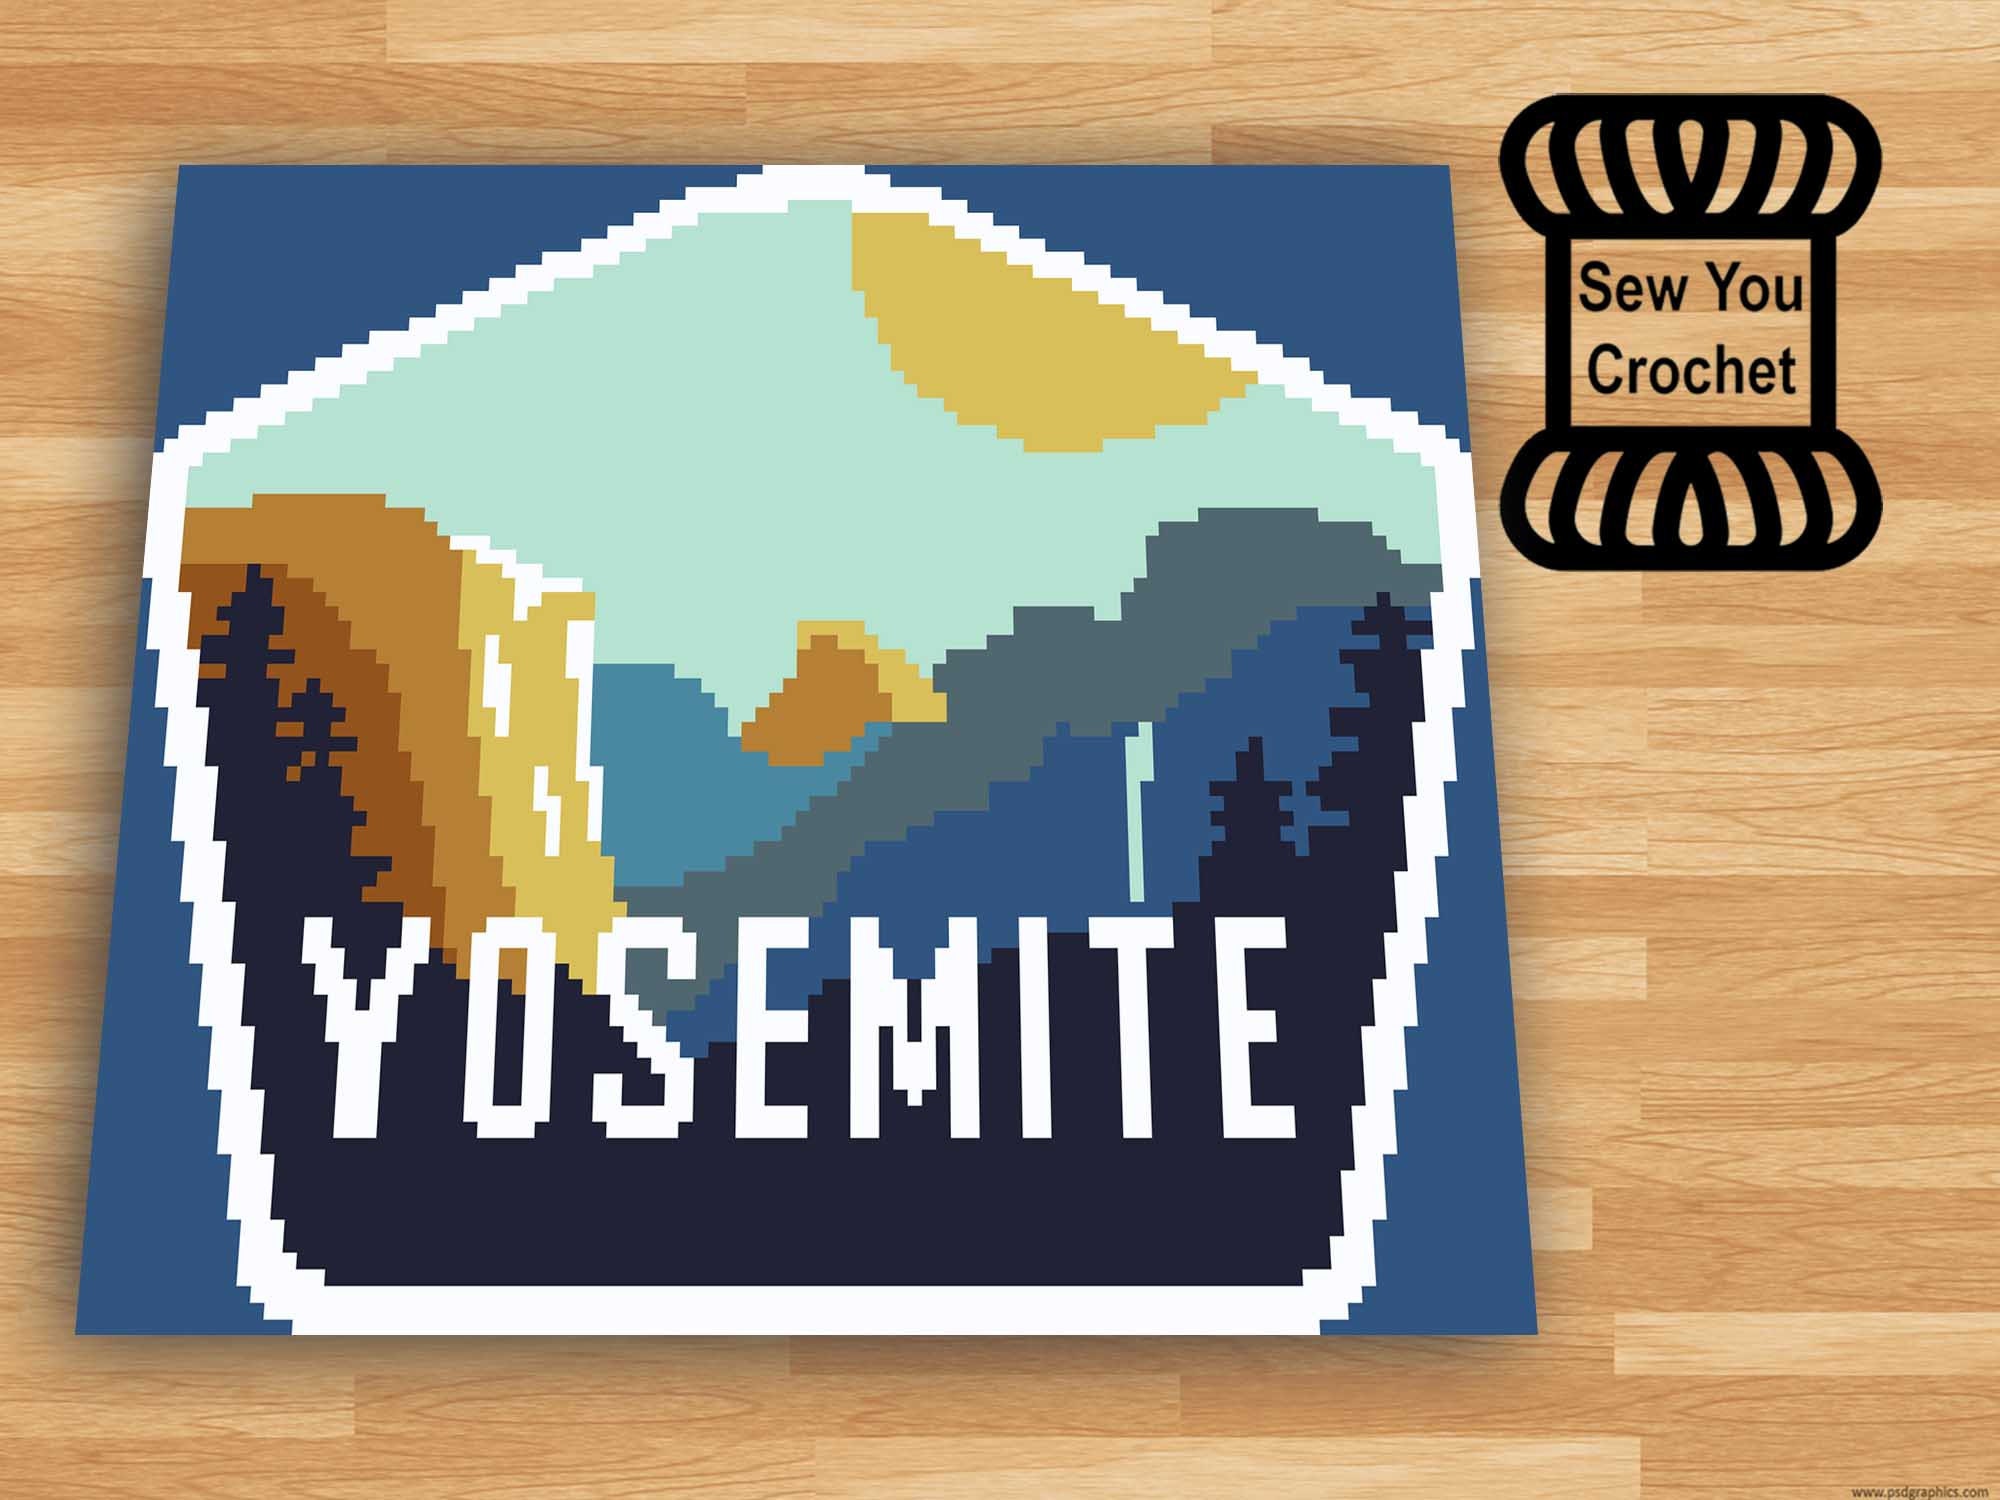 Heartland Yarn 3 in Yosemite, Super Soft Yarn for Cosplay